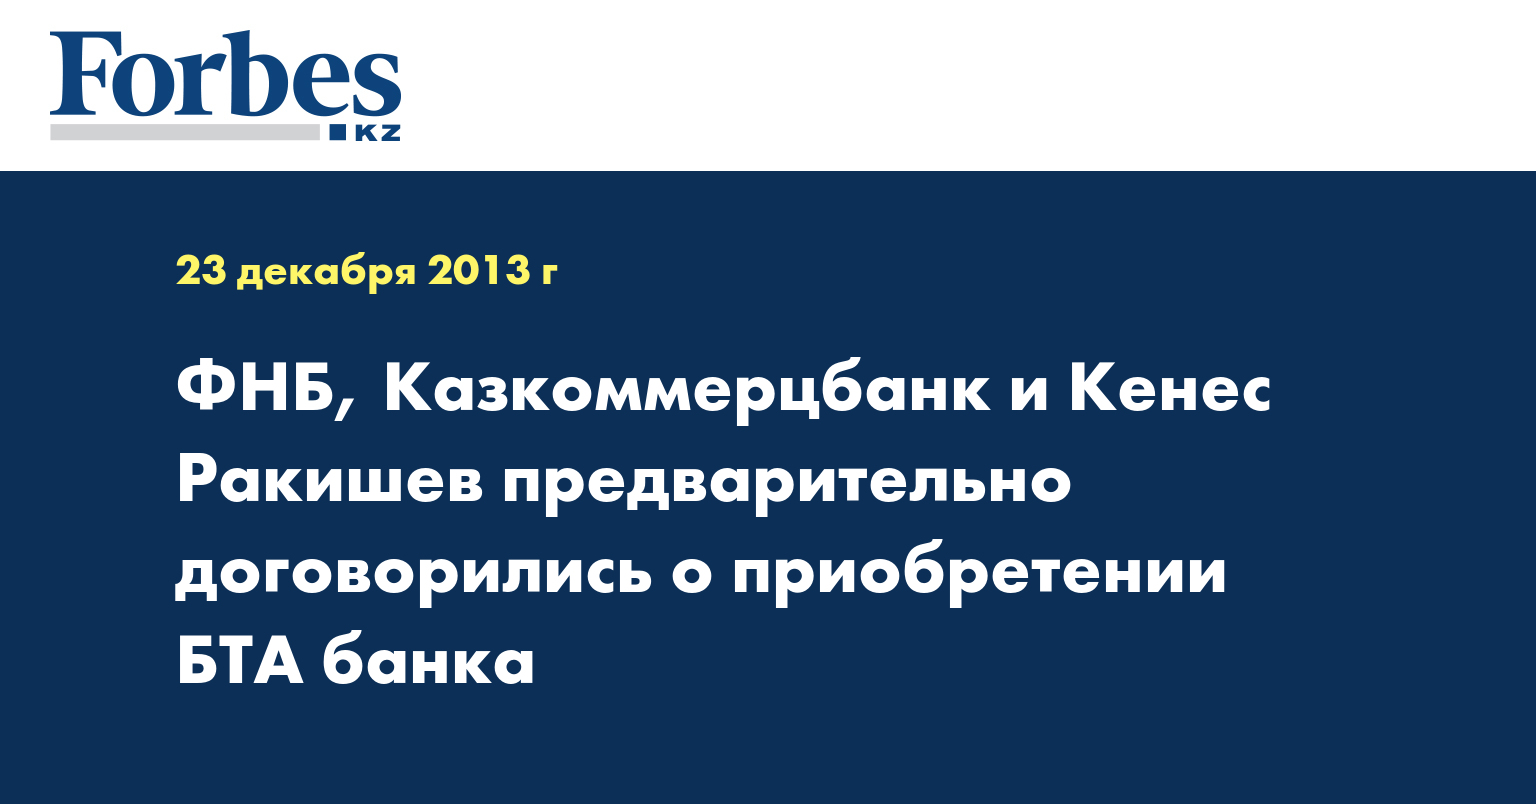 ФНБ, Казкоммерцбанк и Кенес Ракишев предварительно договорились о приобретении БТА банка